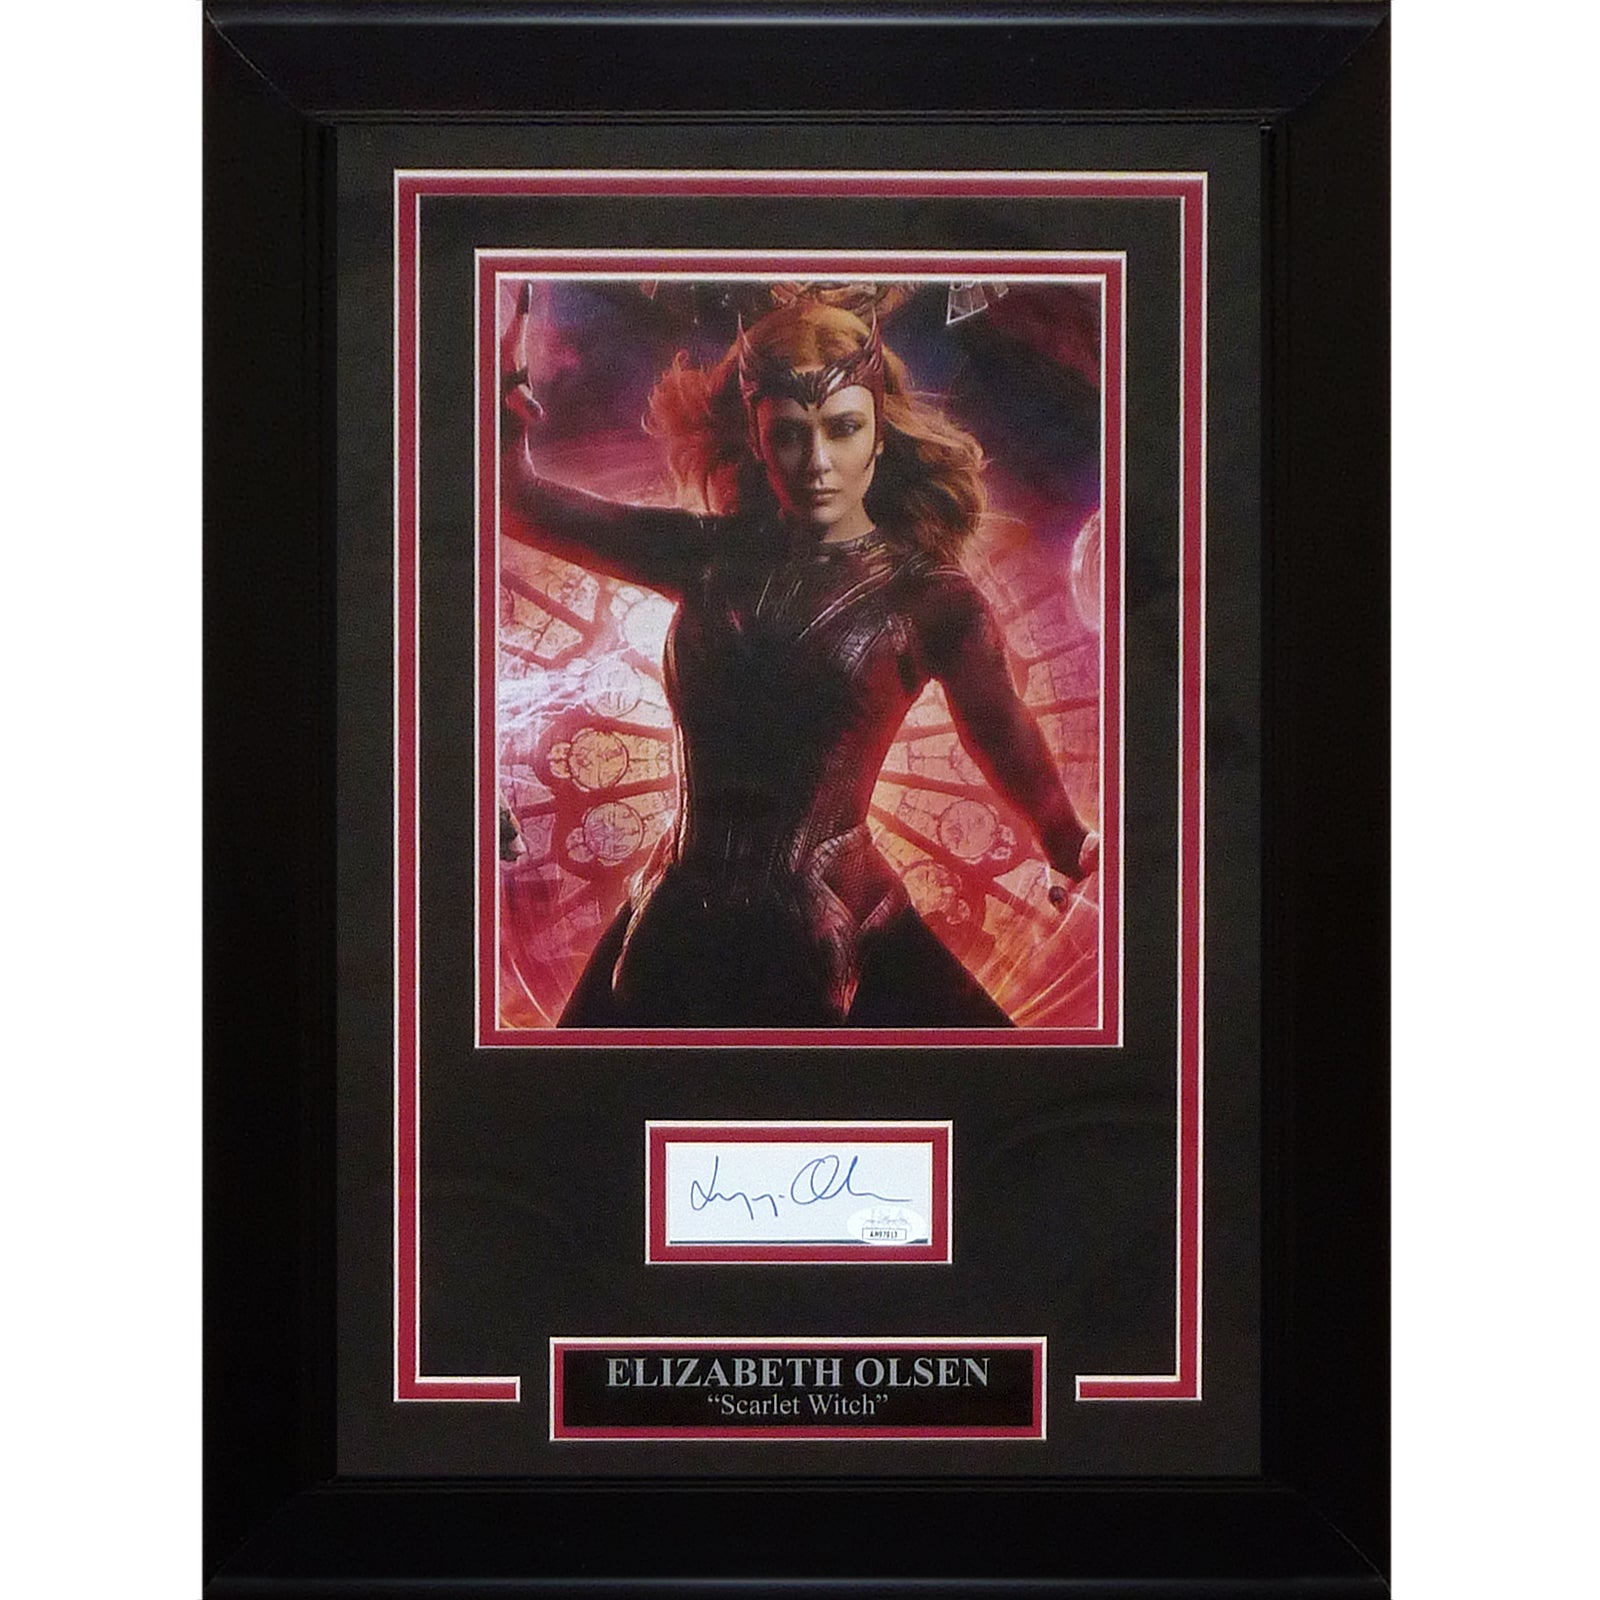 Elizabeth Olsen AKA Scarlet Witch Autographed Marvel 